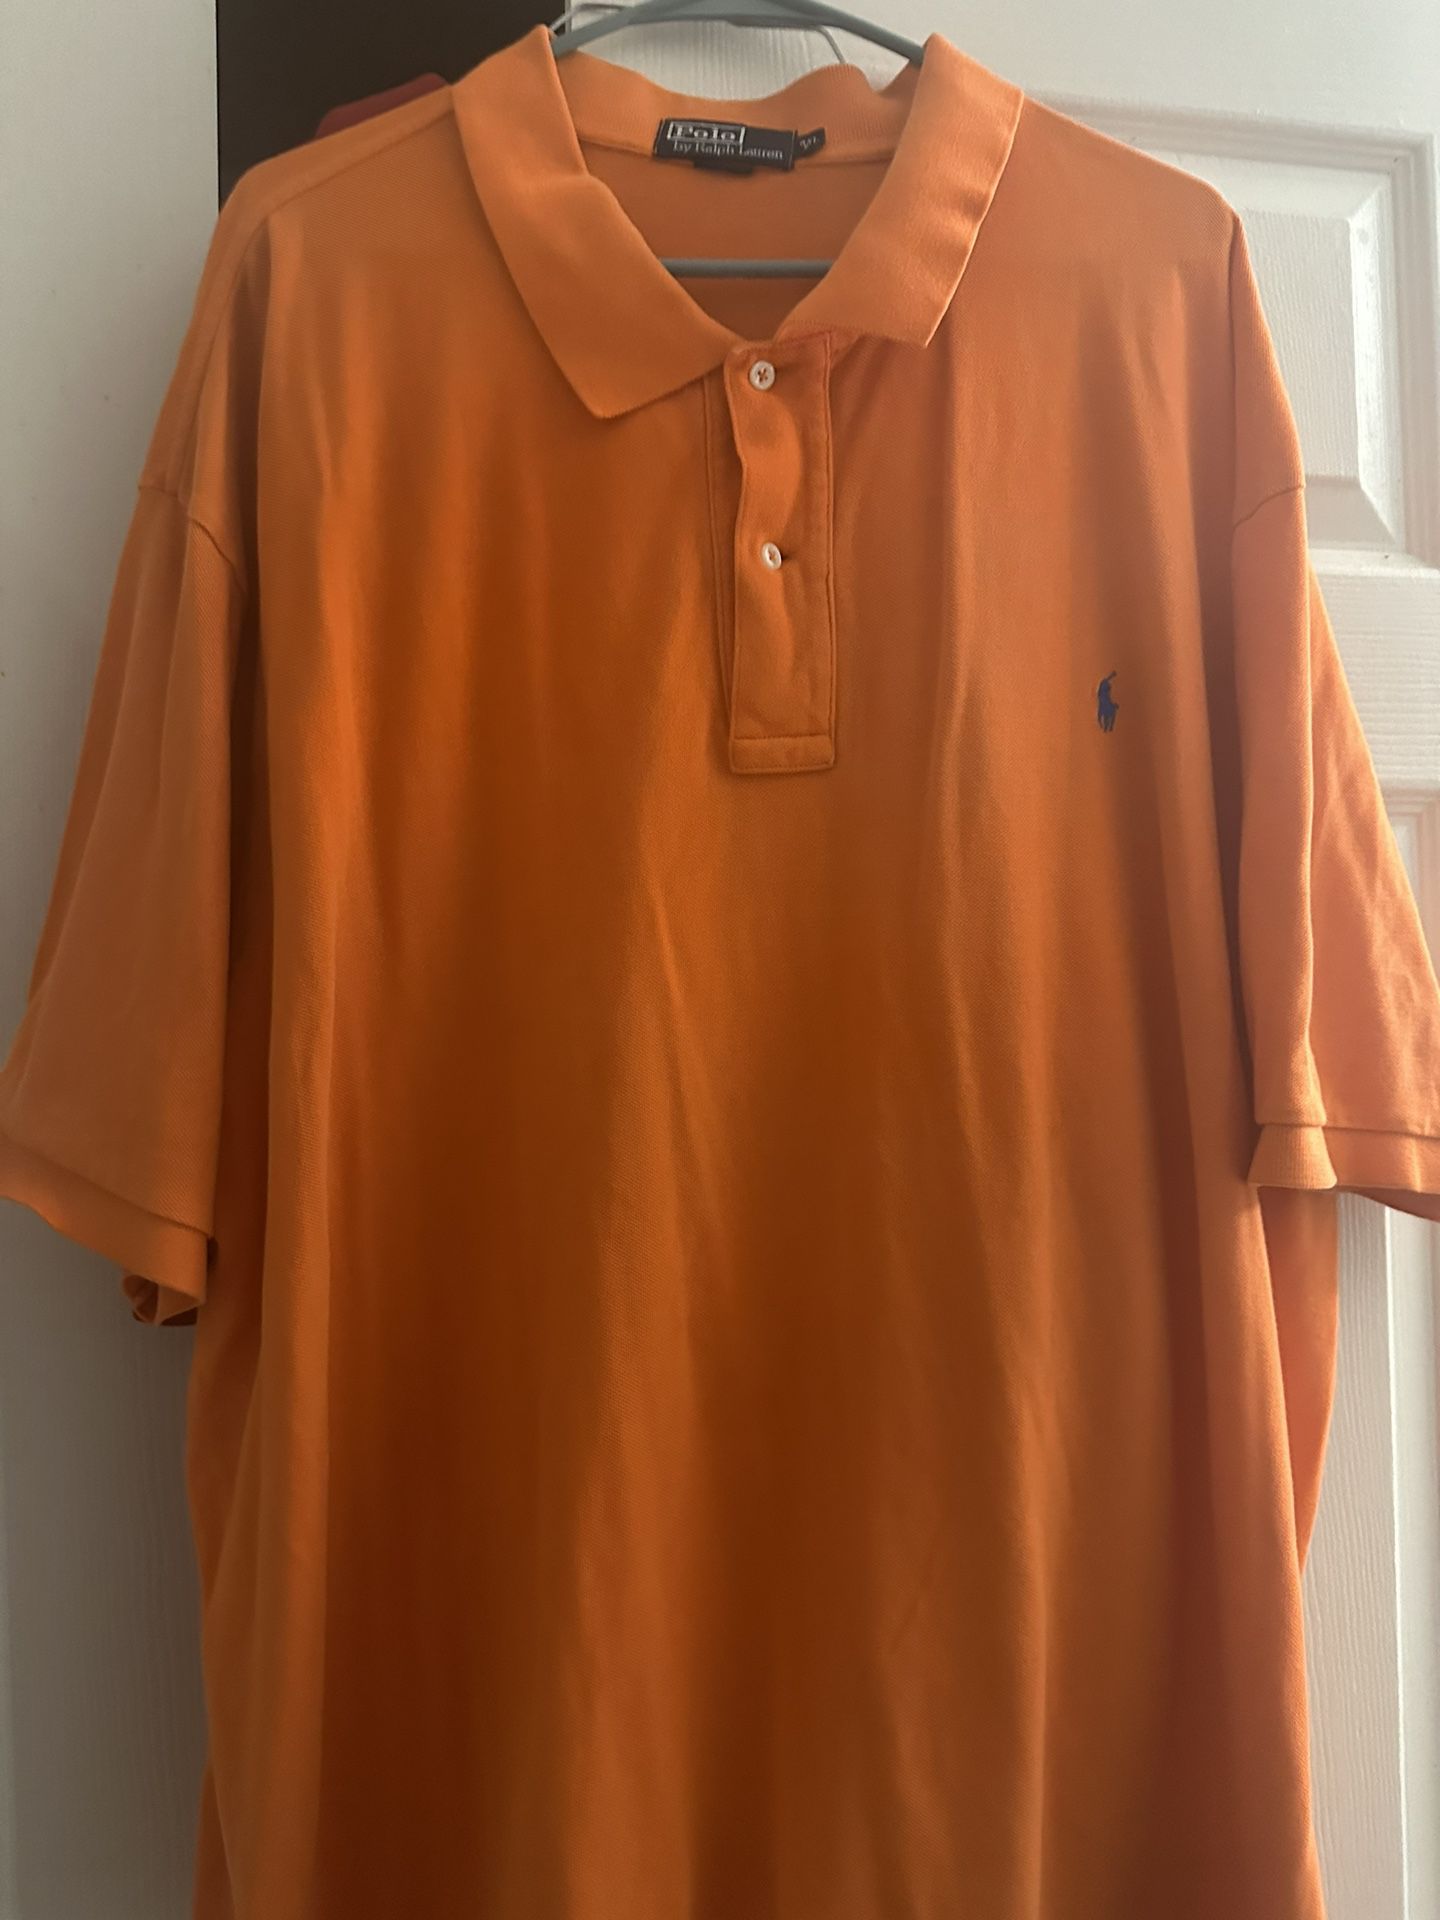 Polo Ralph Lauren 4xl Short Sleeve Shirt With Collar